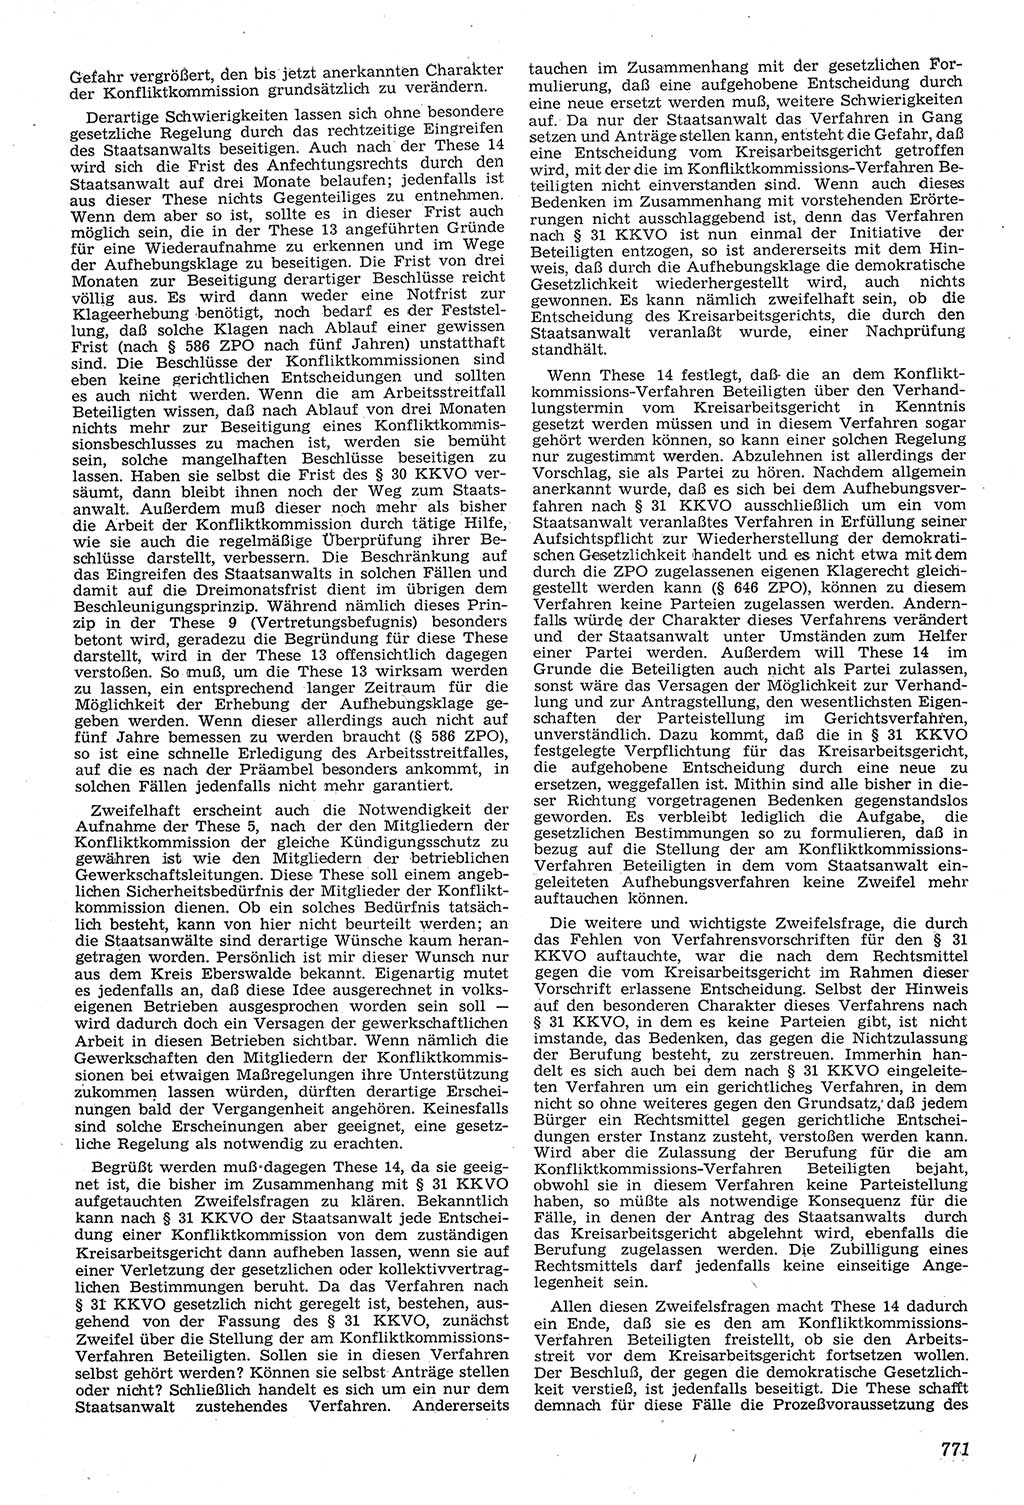 Neue Justiz (NJ), Zeitschrift für Recht und Rechtswissenschaft [Deutsche Demokratische Republik (DDR)], 11. Jahrgang 1957, Seite 771 (NJ DDR 1957, S. 771)